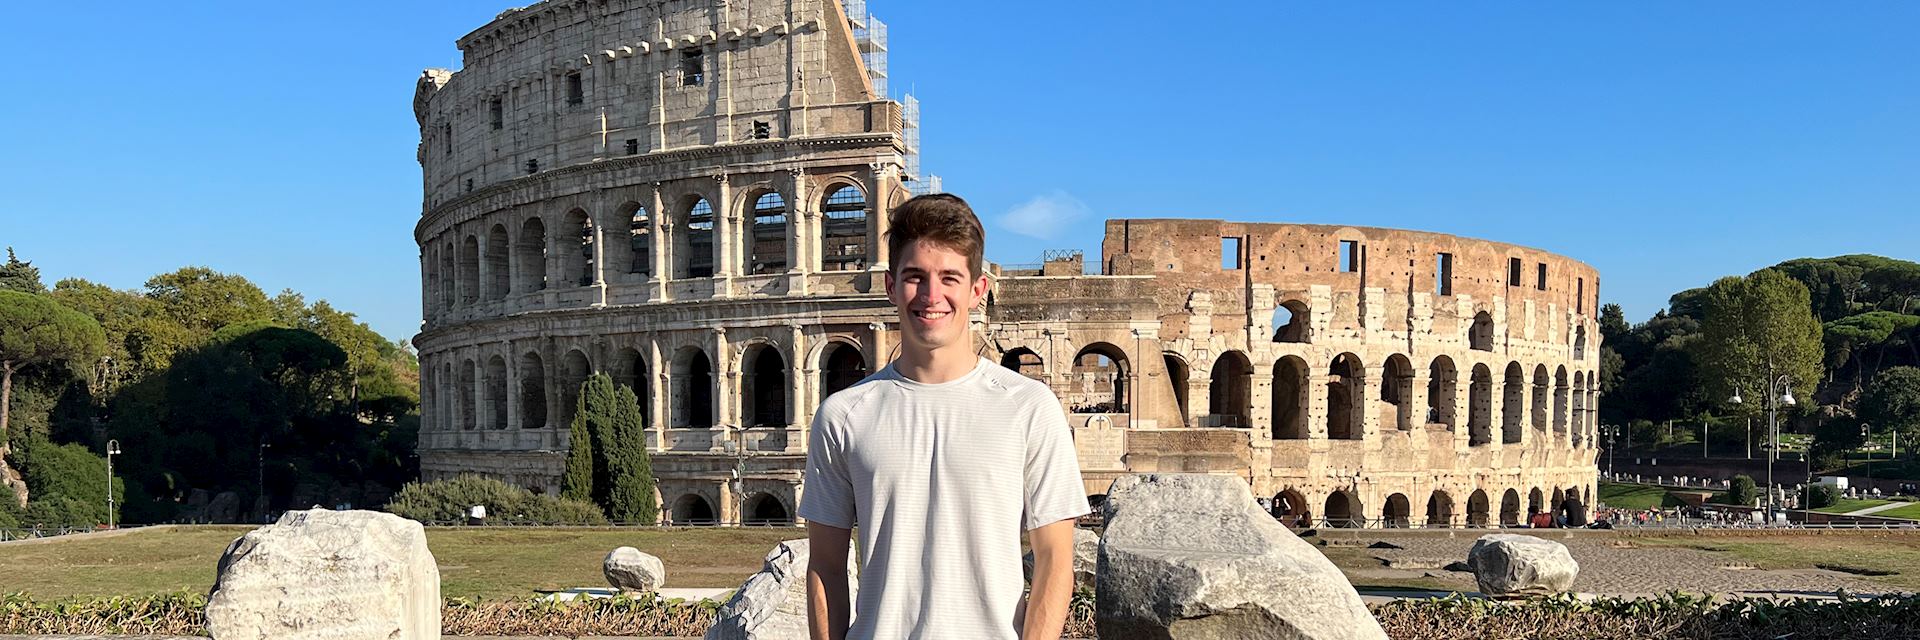 Zachary in Italy